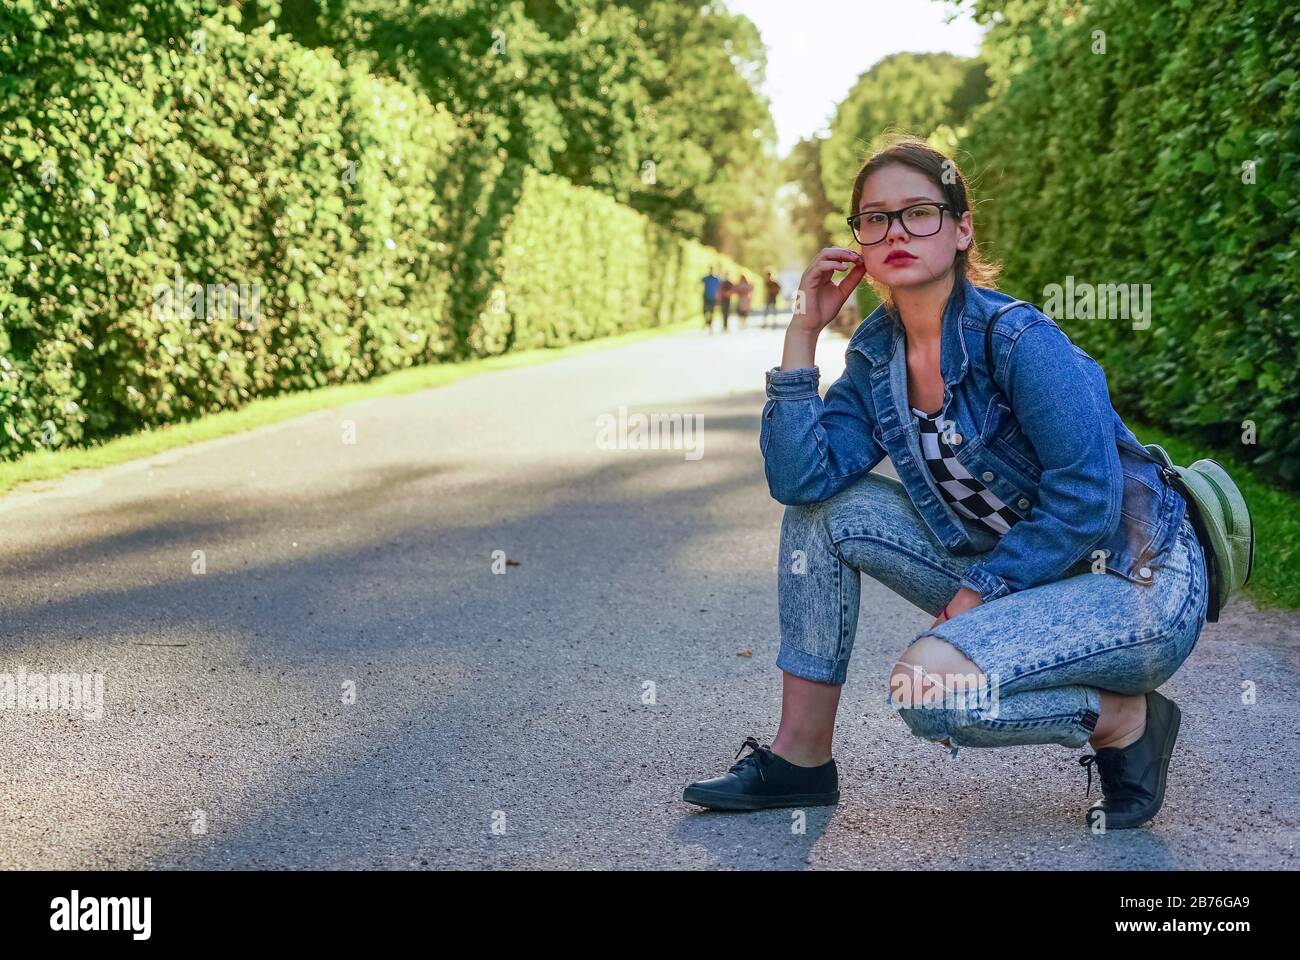 Ein junges Mädchen mit Brille in einem Park auf einer grünen Gasse Stockfoto